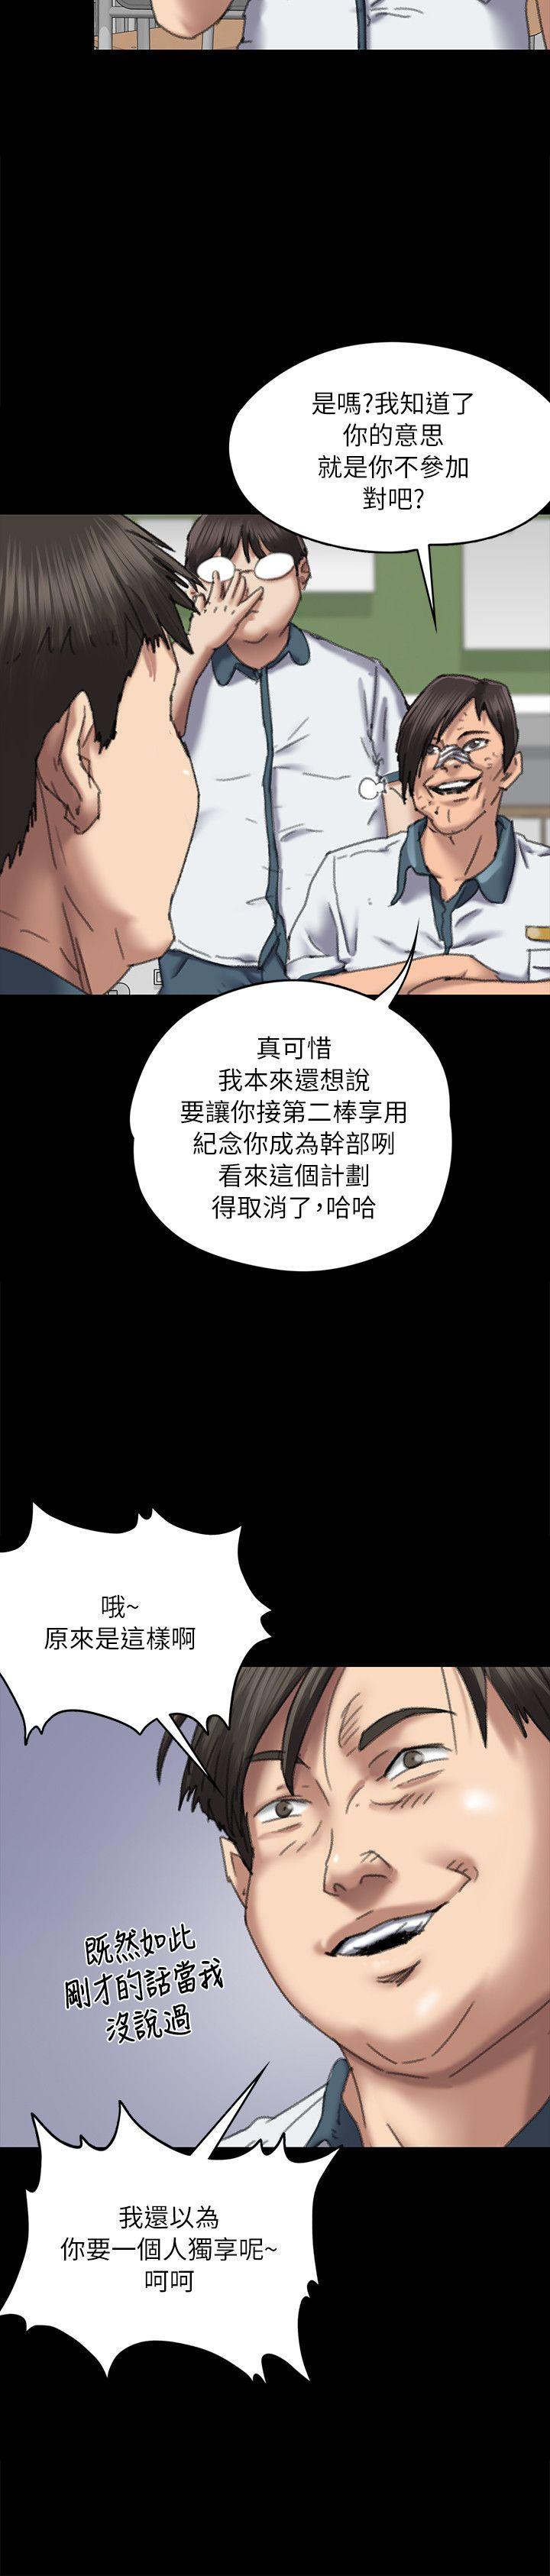 韩国污漫画 傀儡 第60话 - 强姦犯之子的噁心计画 7